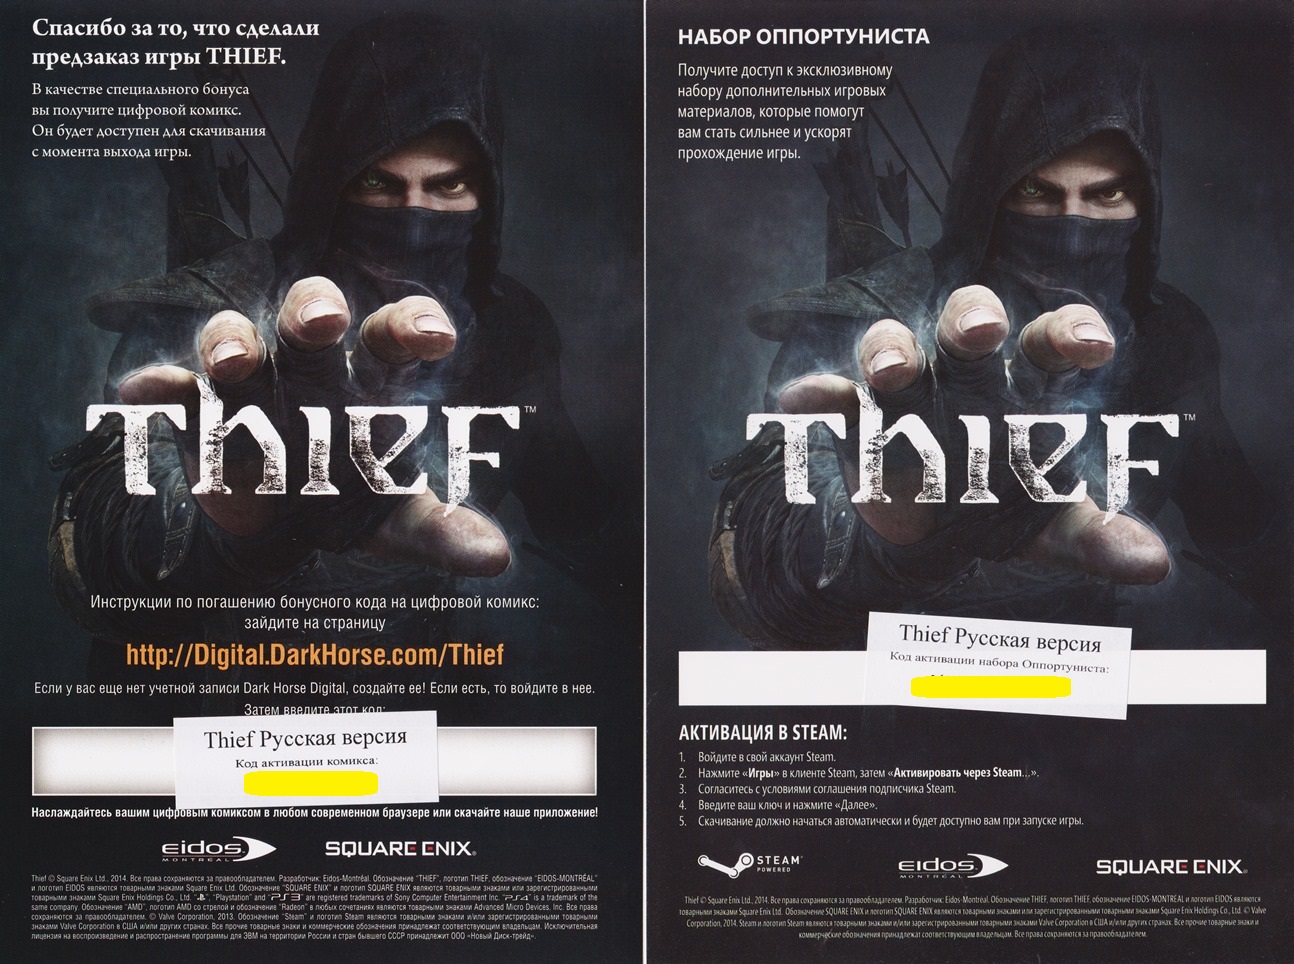 Купить thief collection купить. Thief 2014 диск. Thief игра 2014 Steam. Thief 2014 диск купить.